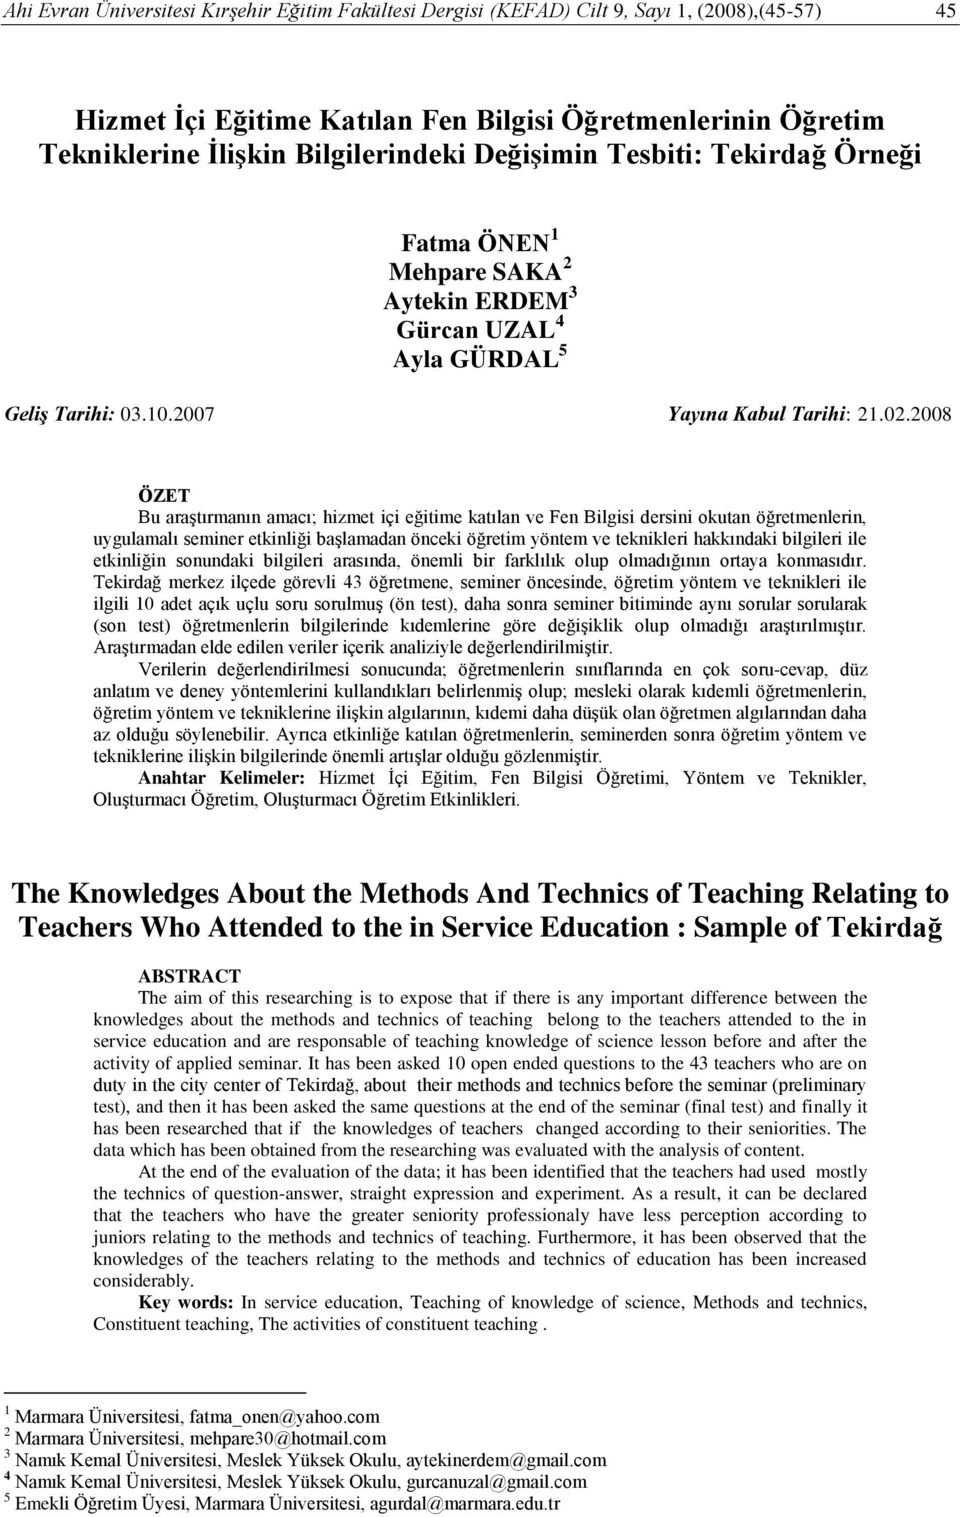 2008 ÖZET Bu araştırmanın amacı; hizmet içi eğitime katılan ve Fen Bilgisi dersini okutan öğretmenlerin, uygulamalı seminer etkinliği başlamadan önceki öğretim yöntem ve teknikleri hakkındaki